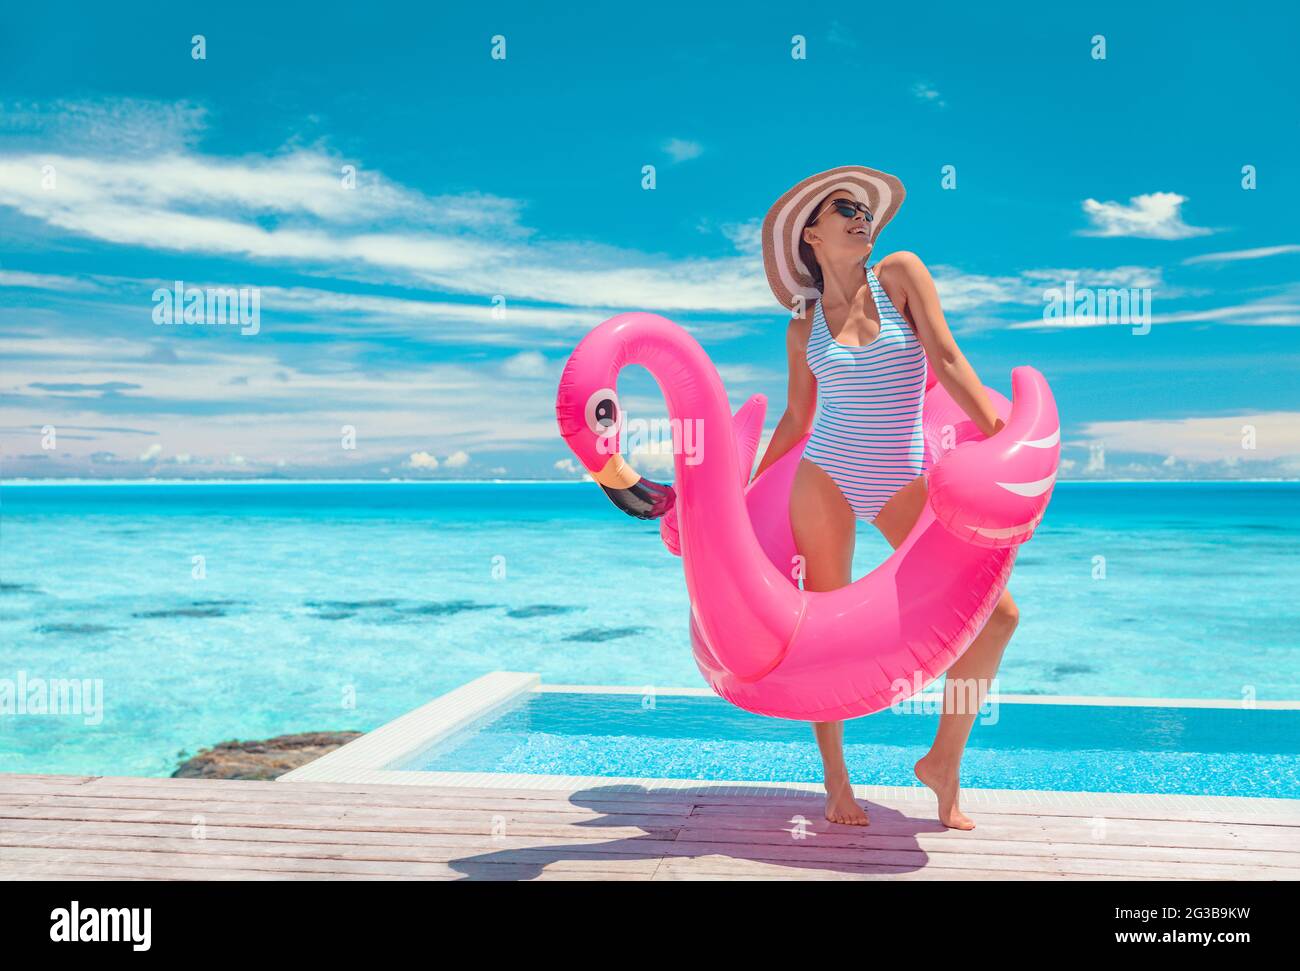 Piscina de verano divertido modelo de traje de baño posando en rosa  flamingos flotando mostrando la figura delgada bikini cuerpo listo para una  escapada de vacaciones de lujo en el Caribe. Mujer